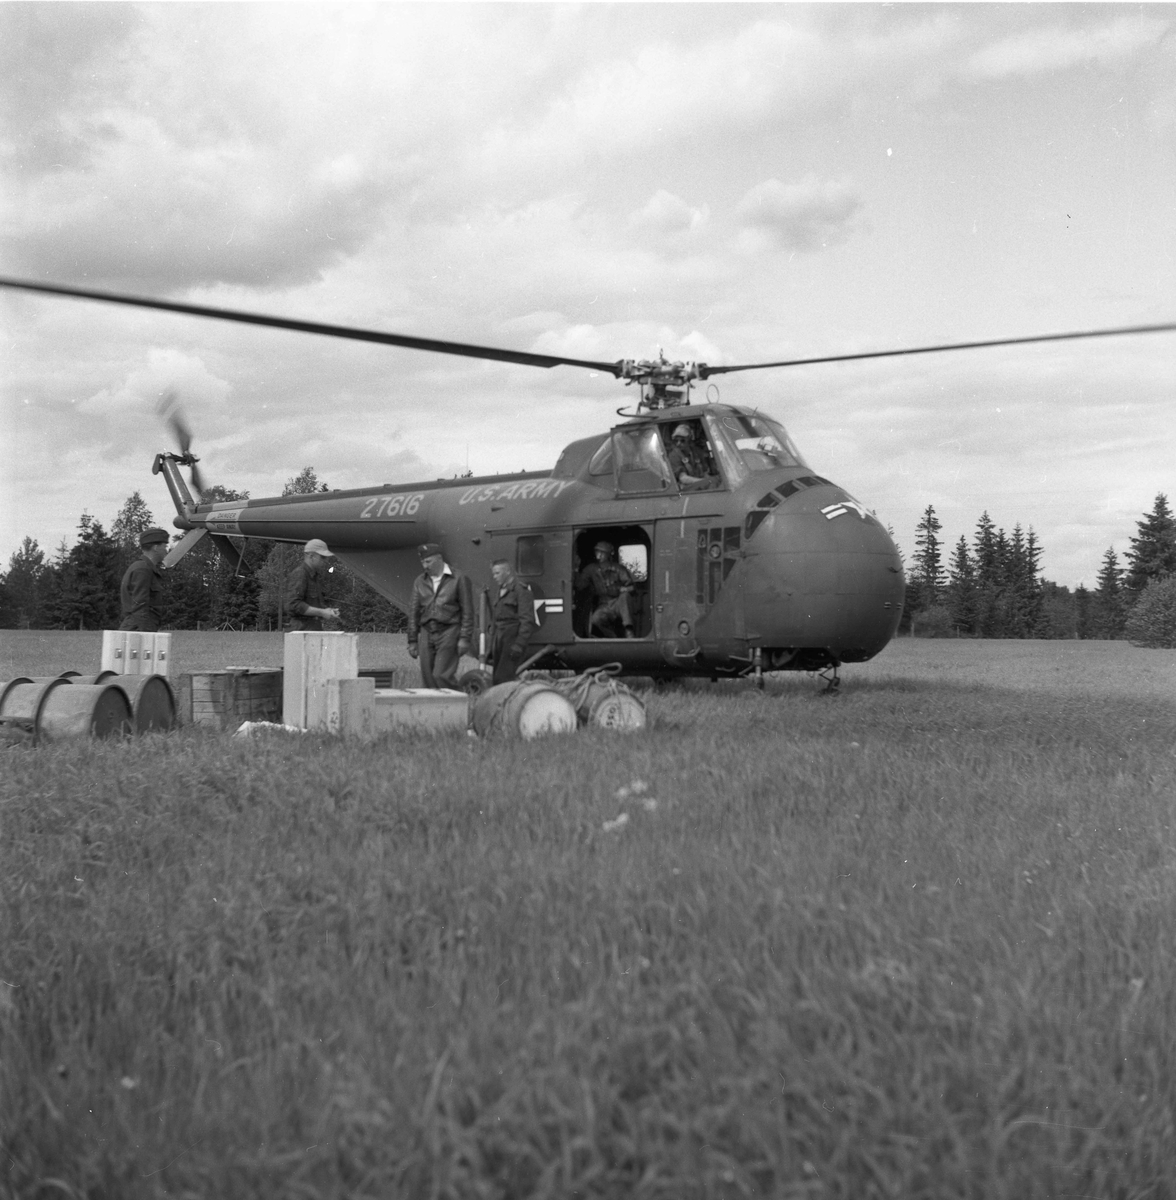 Sommeren 1955 fraktet et helikopter fra US Army utstyr og materialer fra Dokkenmoen til Mistbergtoppen. Det ble bygd en radiolinkstasjon el.likn. på toppen. Også i 1957 fraktet amerikanske helikoptre materialer til Mistbergtoppen. Dette var utvilsomt militære anlegg, en del av NATO-samarbeidet.